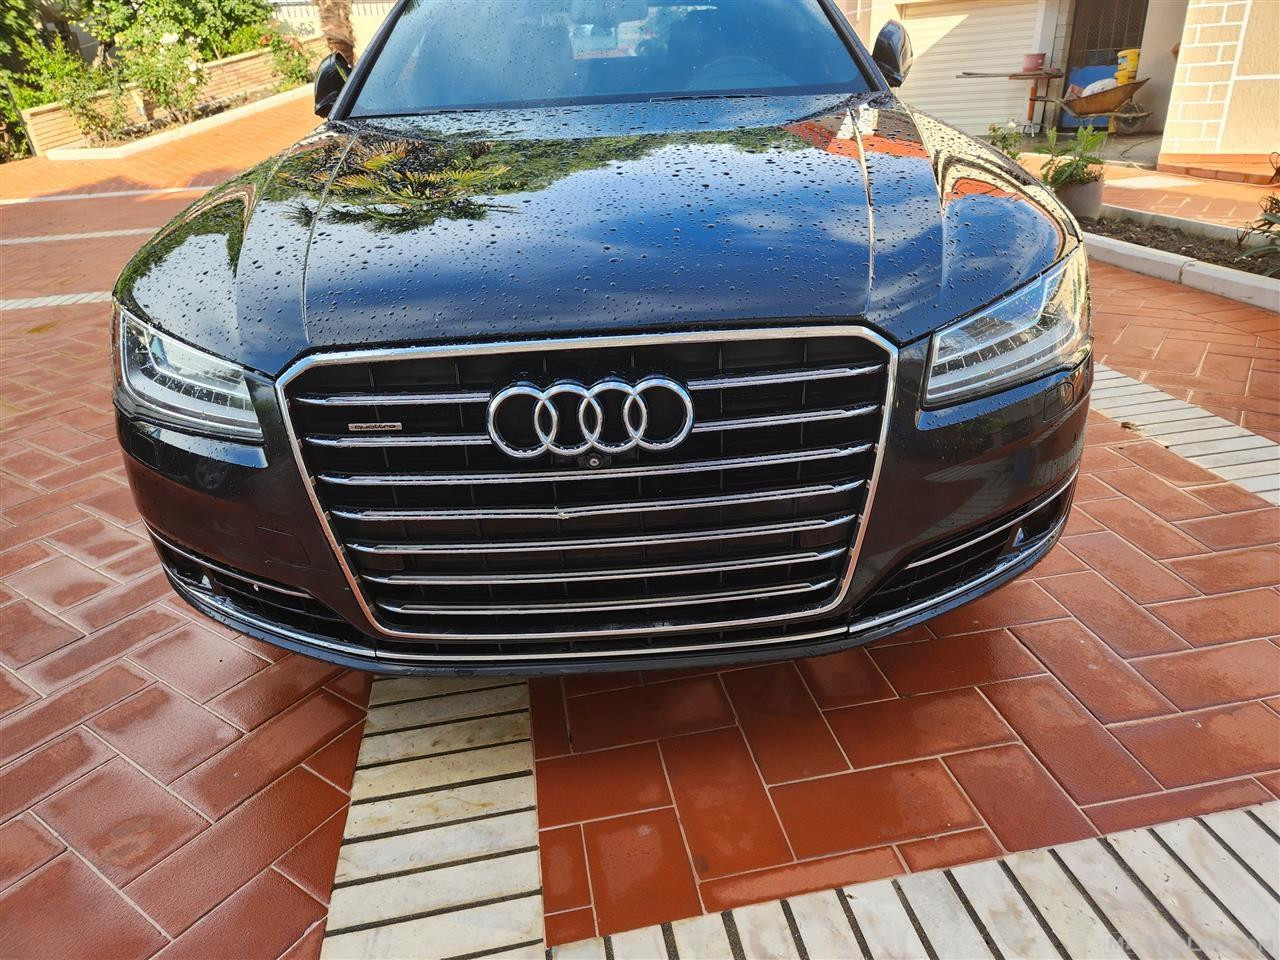 Parakolp difuzor origjinal Audi a8 2015